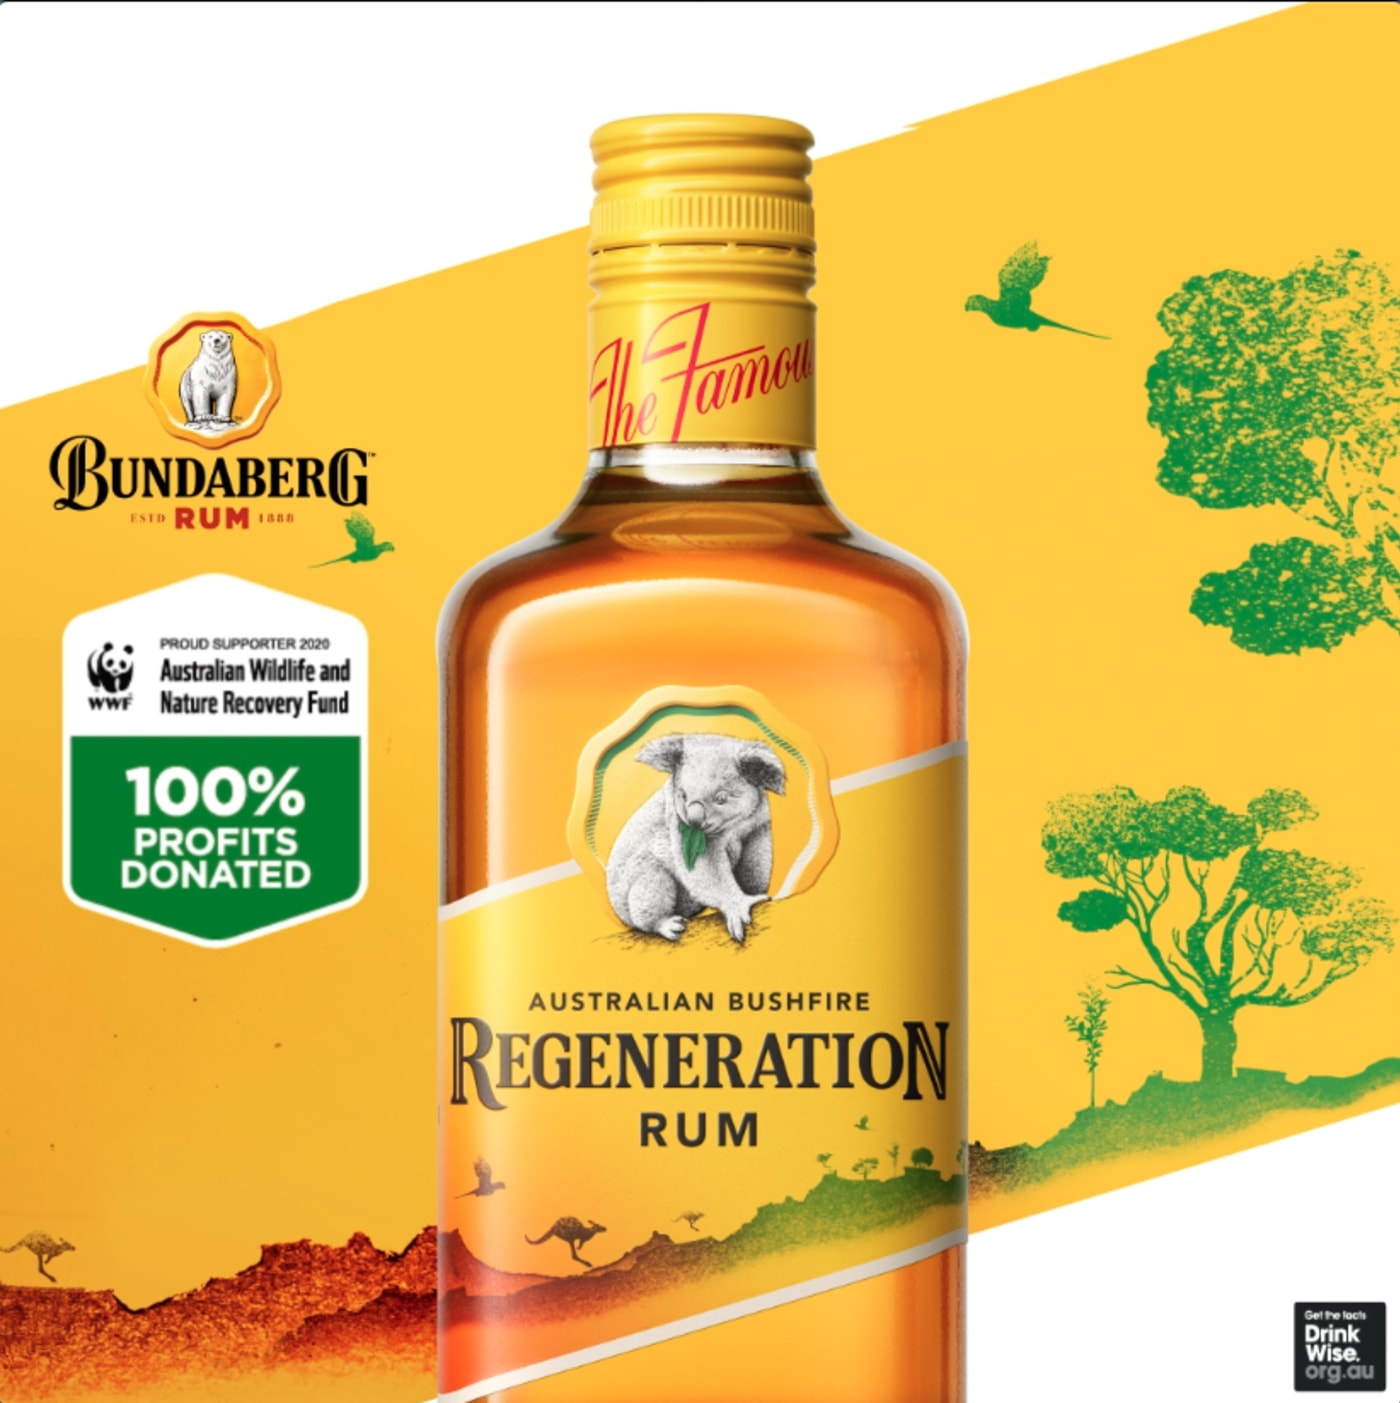 Bundaberg Regeneration Rum